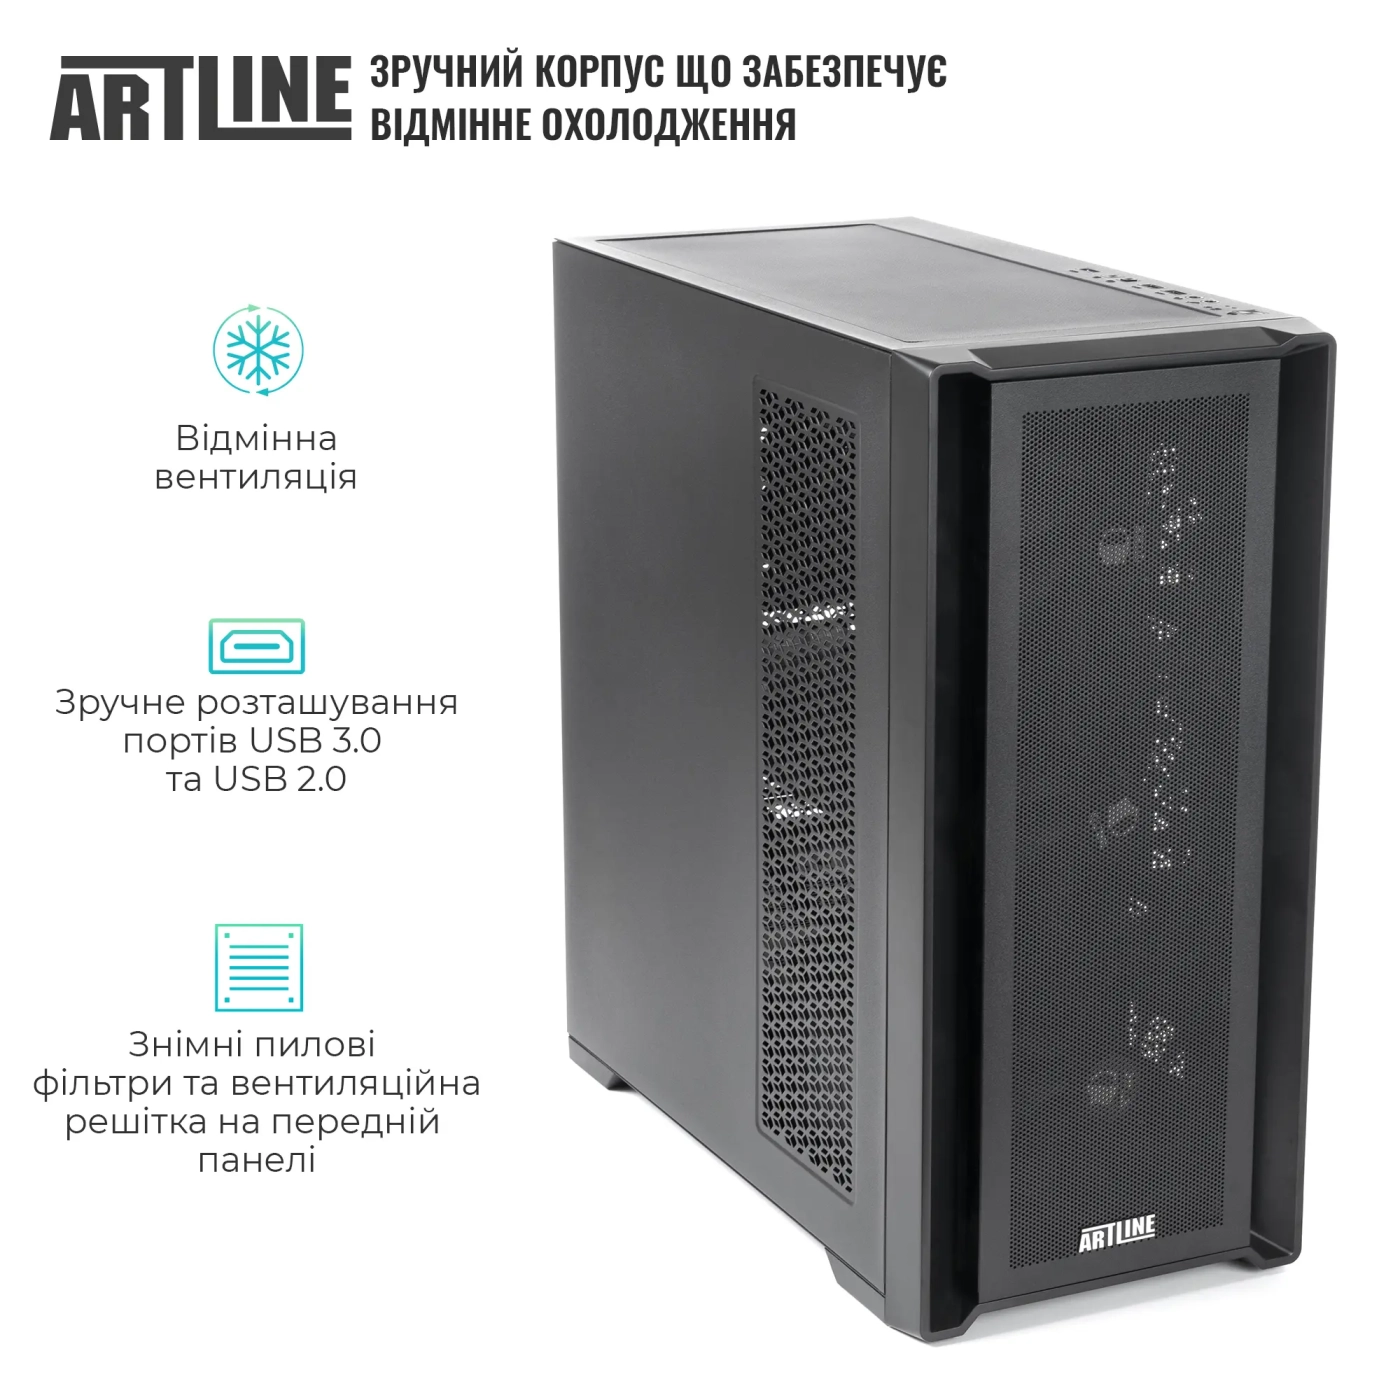 Купить Сервер ARTLINE Business T81 (T81v20) - фото 2